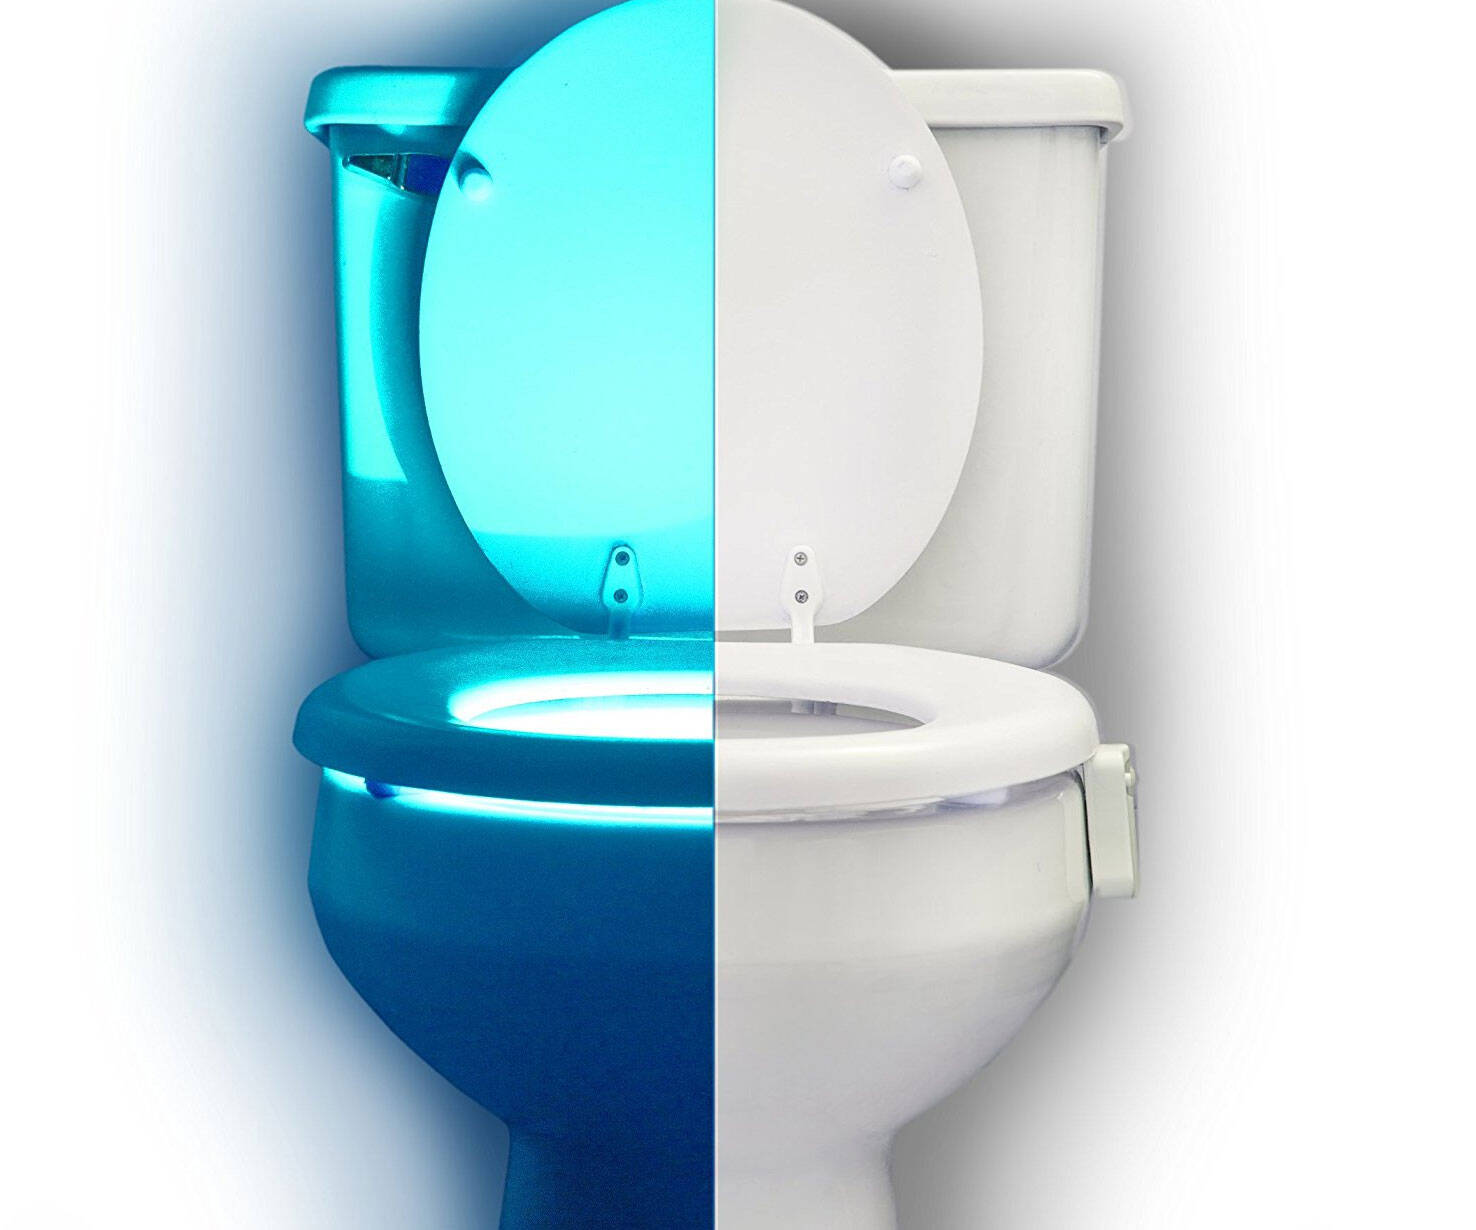 Motion Sensing Toilet Night Light - http://coolthings.us